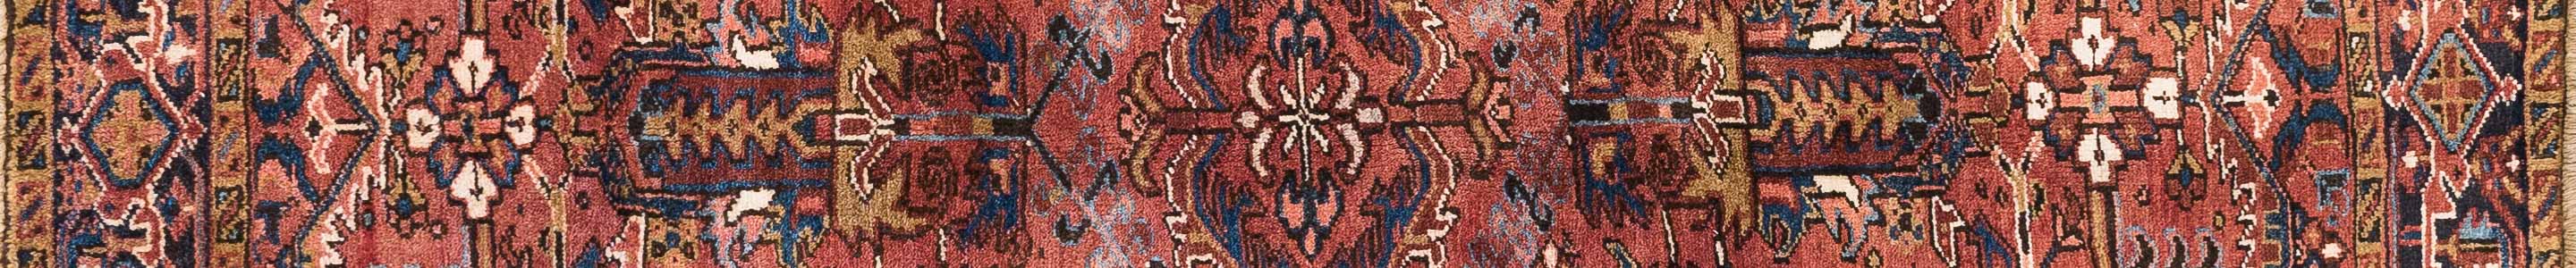 Heris Persian Carpet Rug N1Carpet Canada Montreal Tapis Persan 1590